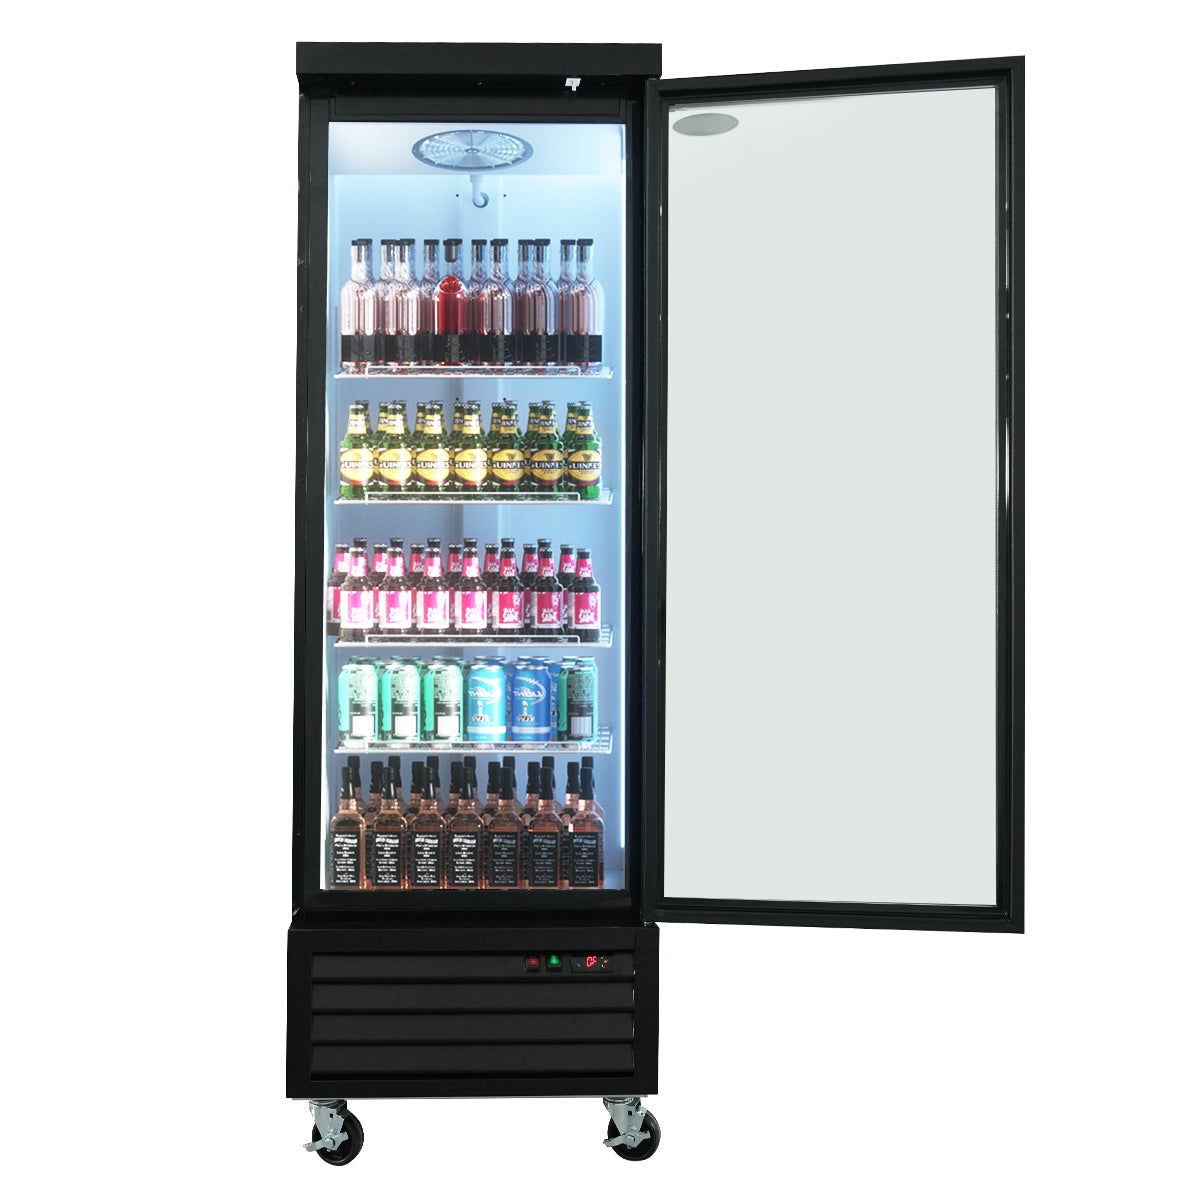 ORIKOOL 27" Glass Door Beverage Cooler Flower Display Refrigerator Merchandising Refrigerator 19.2 cu.ft. SC690FT